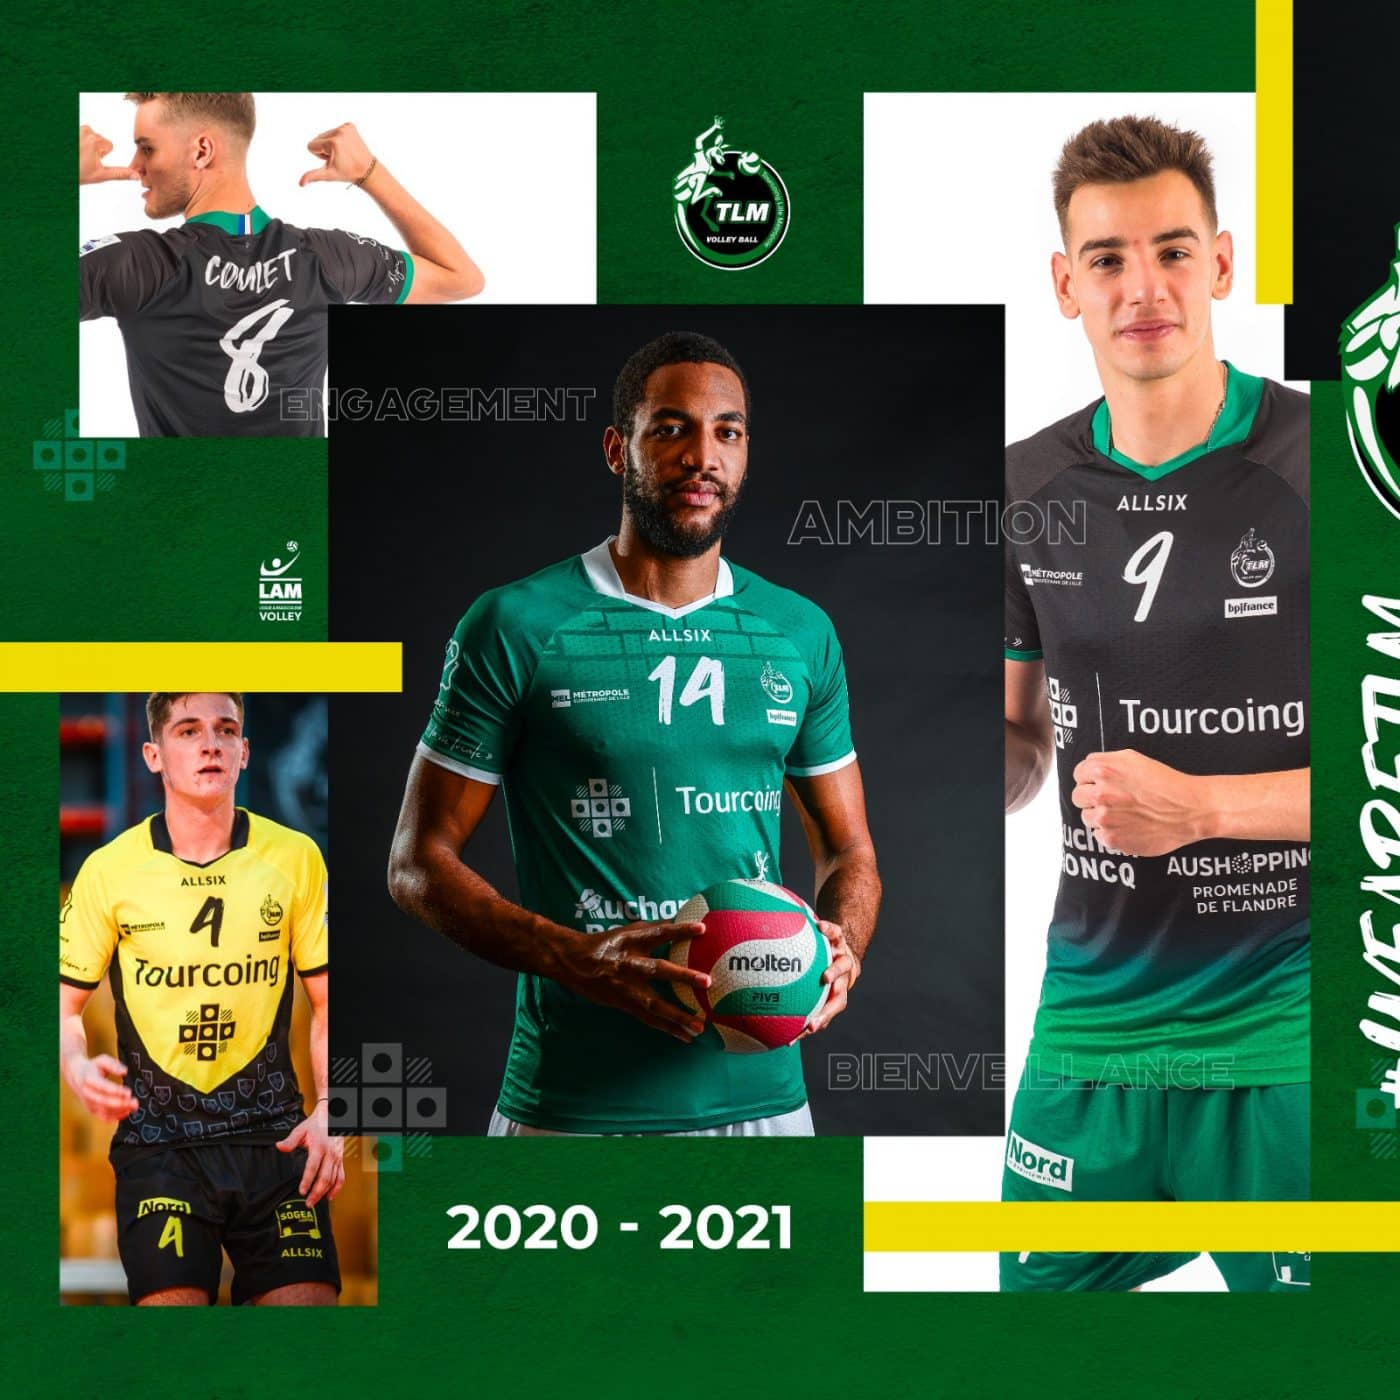 tlm-volley-et-allsix-presentent-les-maillots-pour-la-saison-2020-2021-1